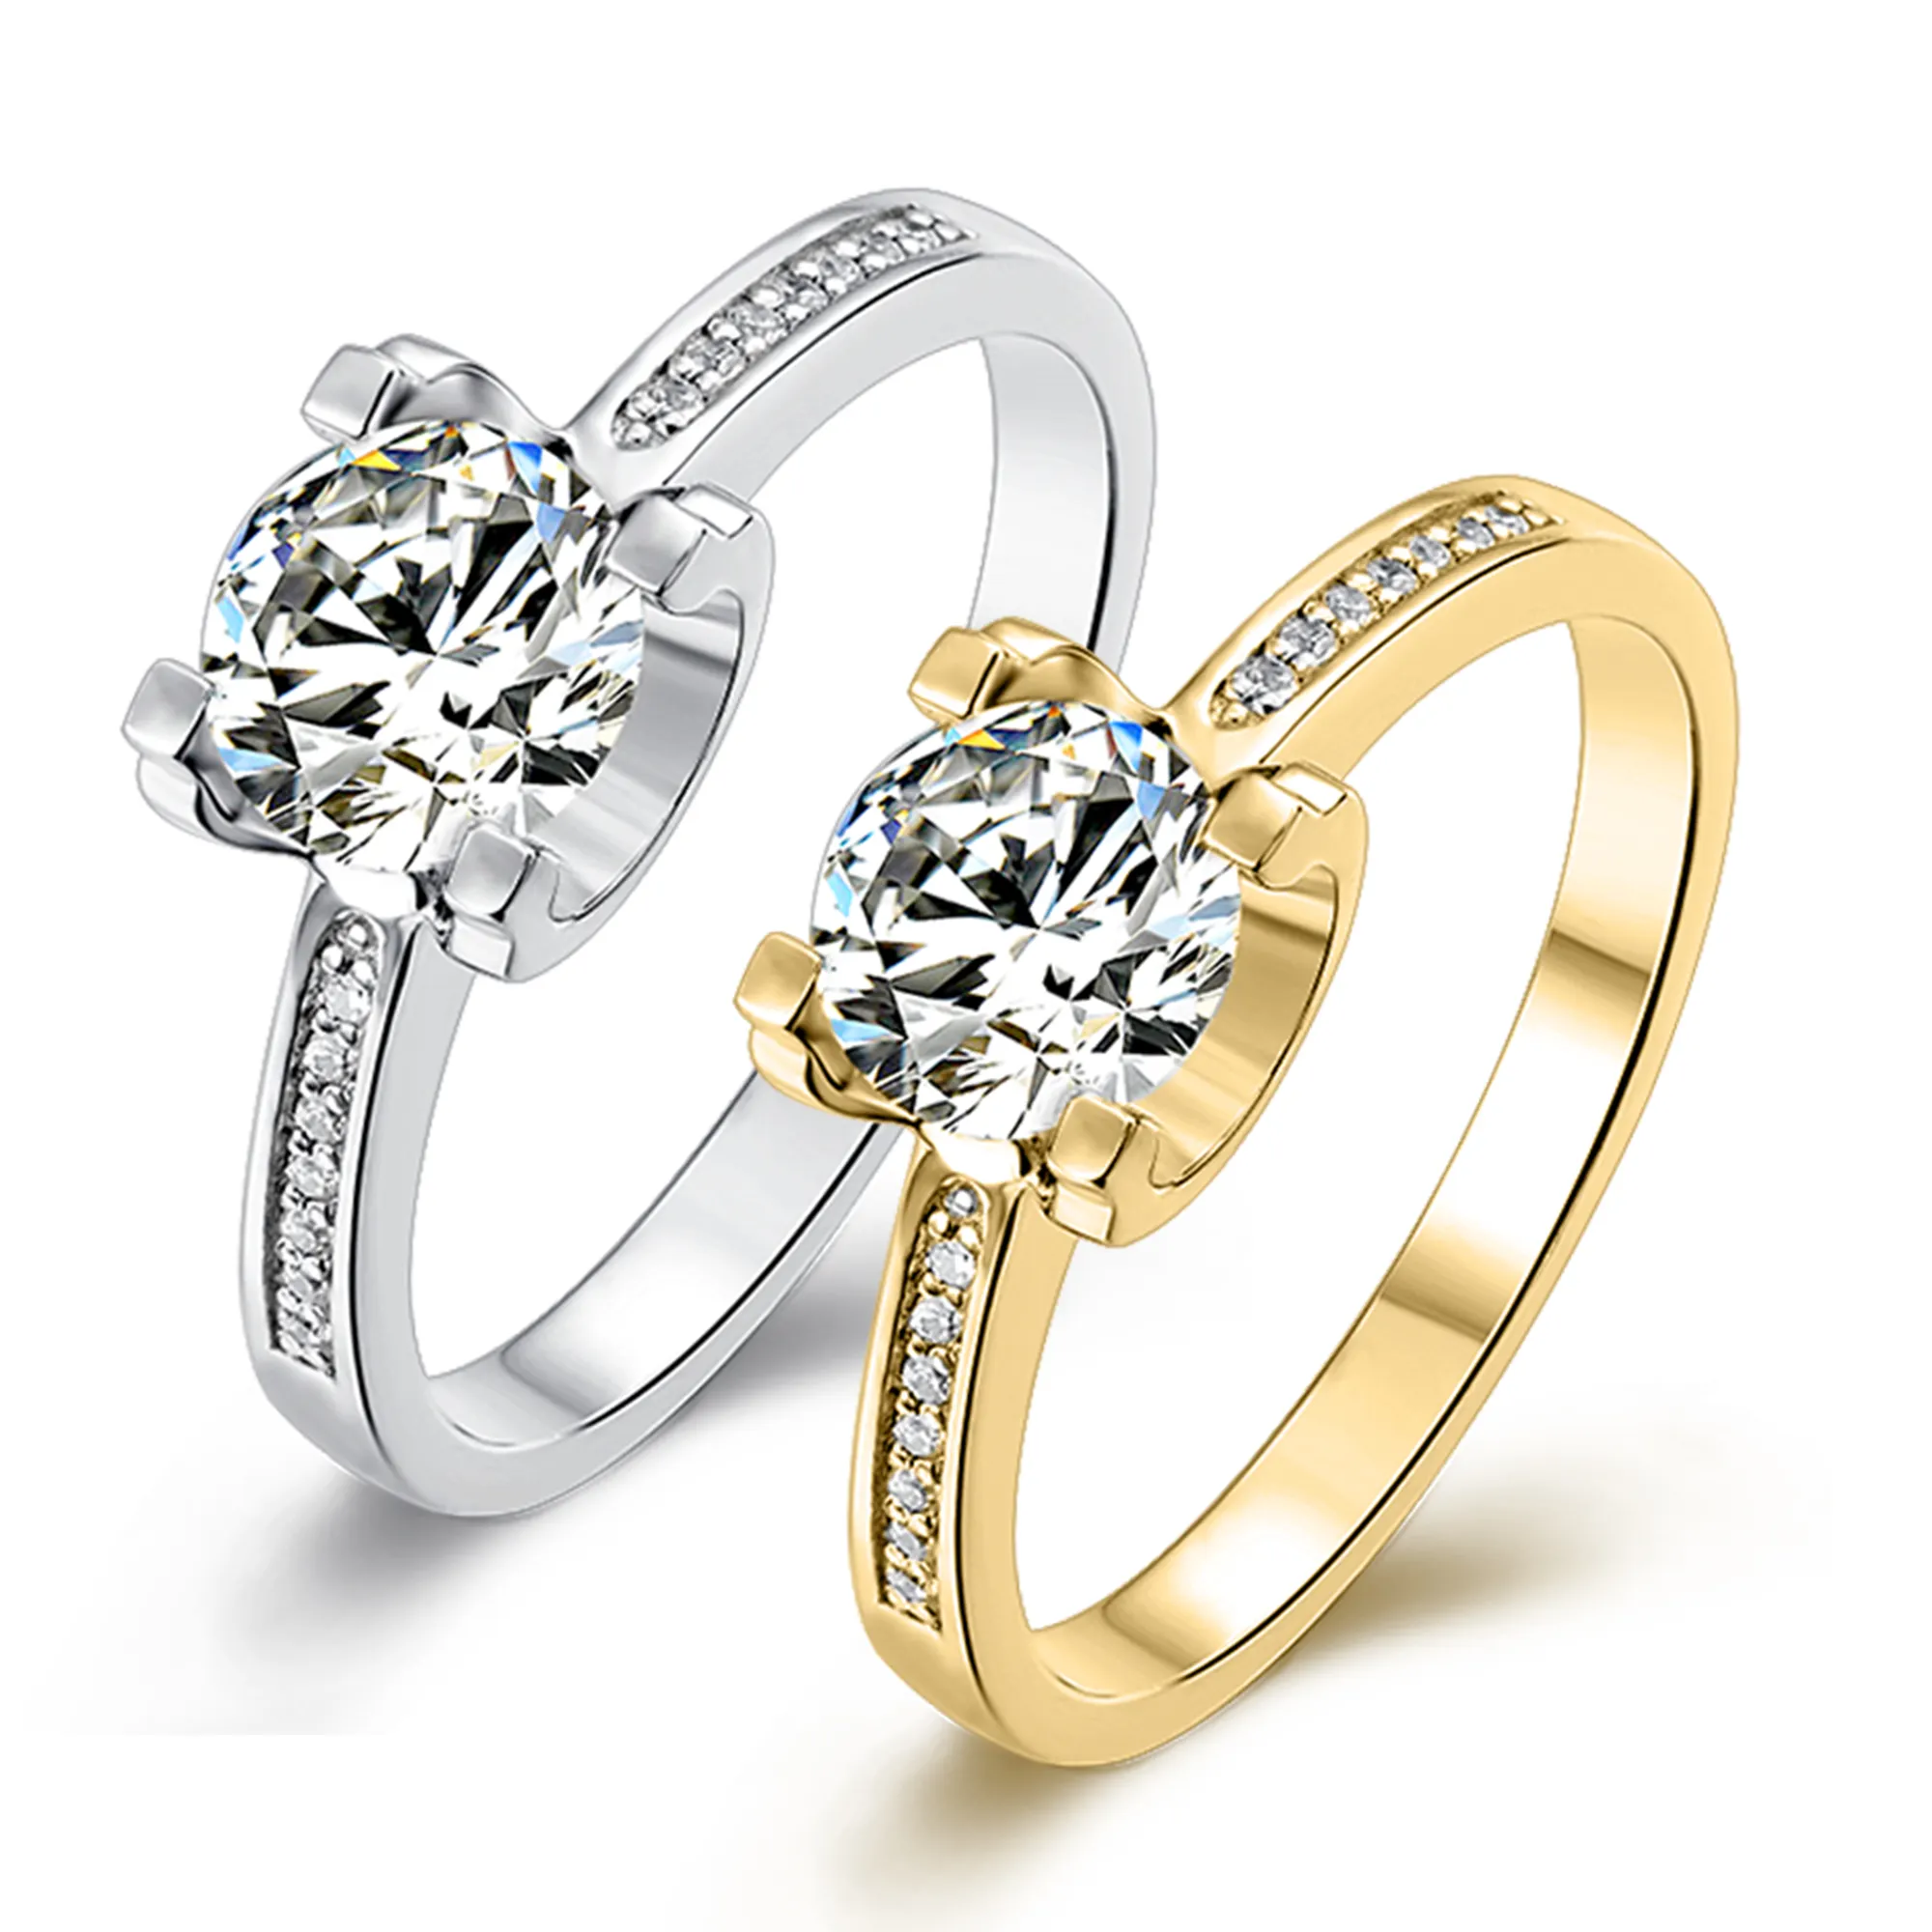 Abiding Custom Trendy 14K White Gold 1.0CT Moissanite Diamond Ring Jewelry Engagement Women Golden Rings